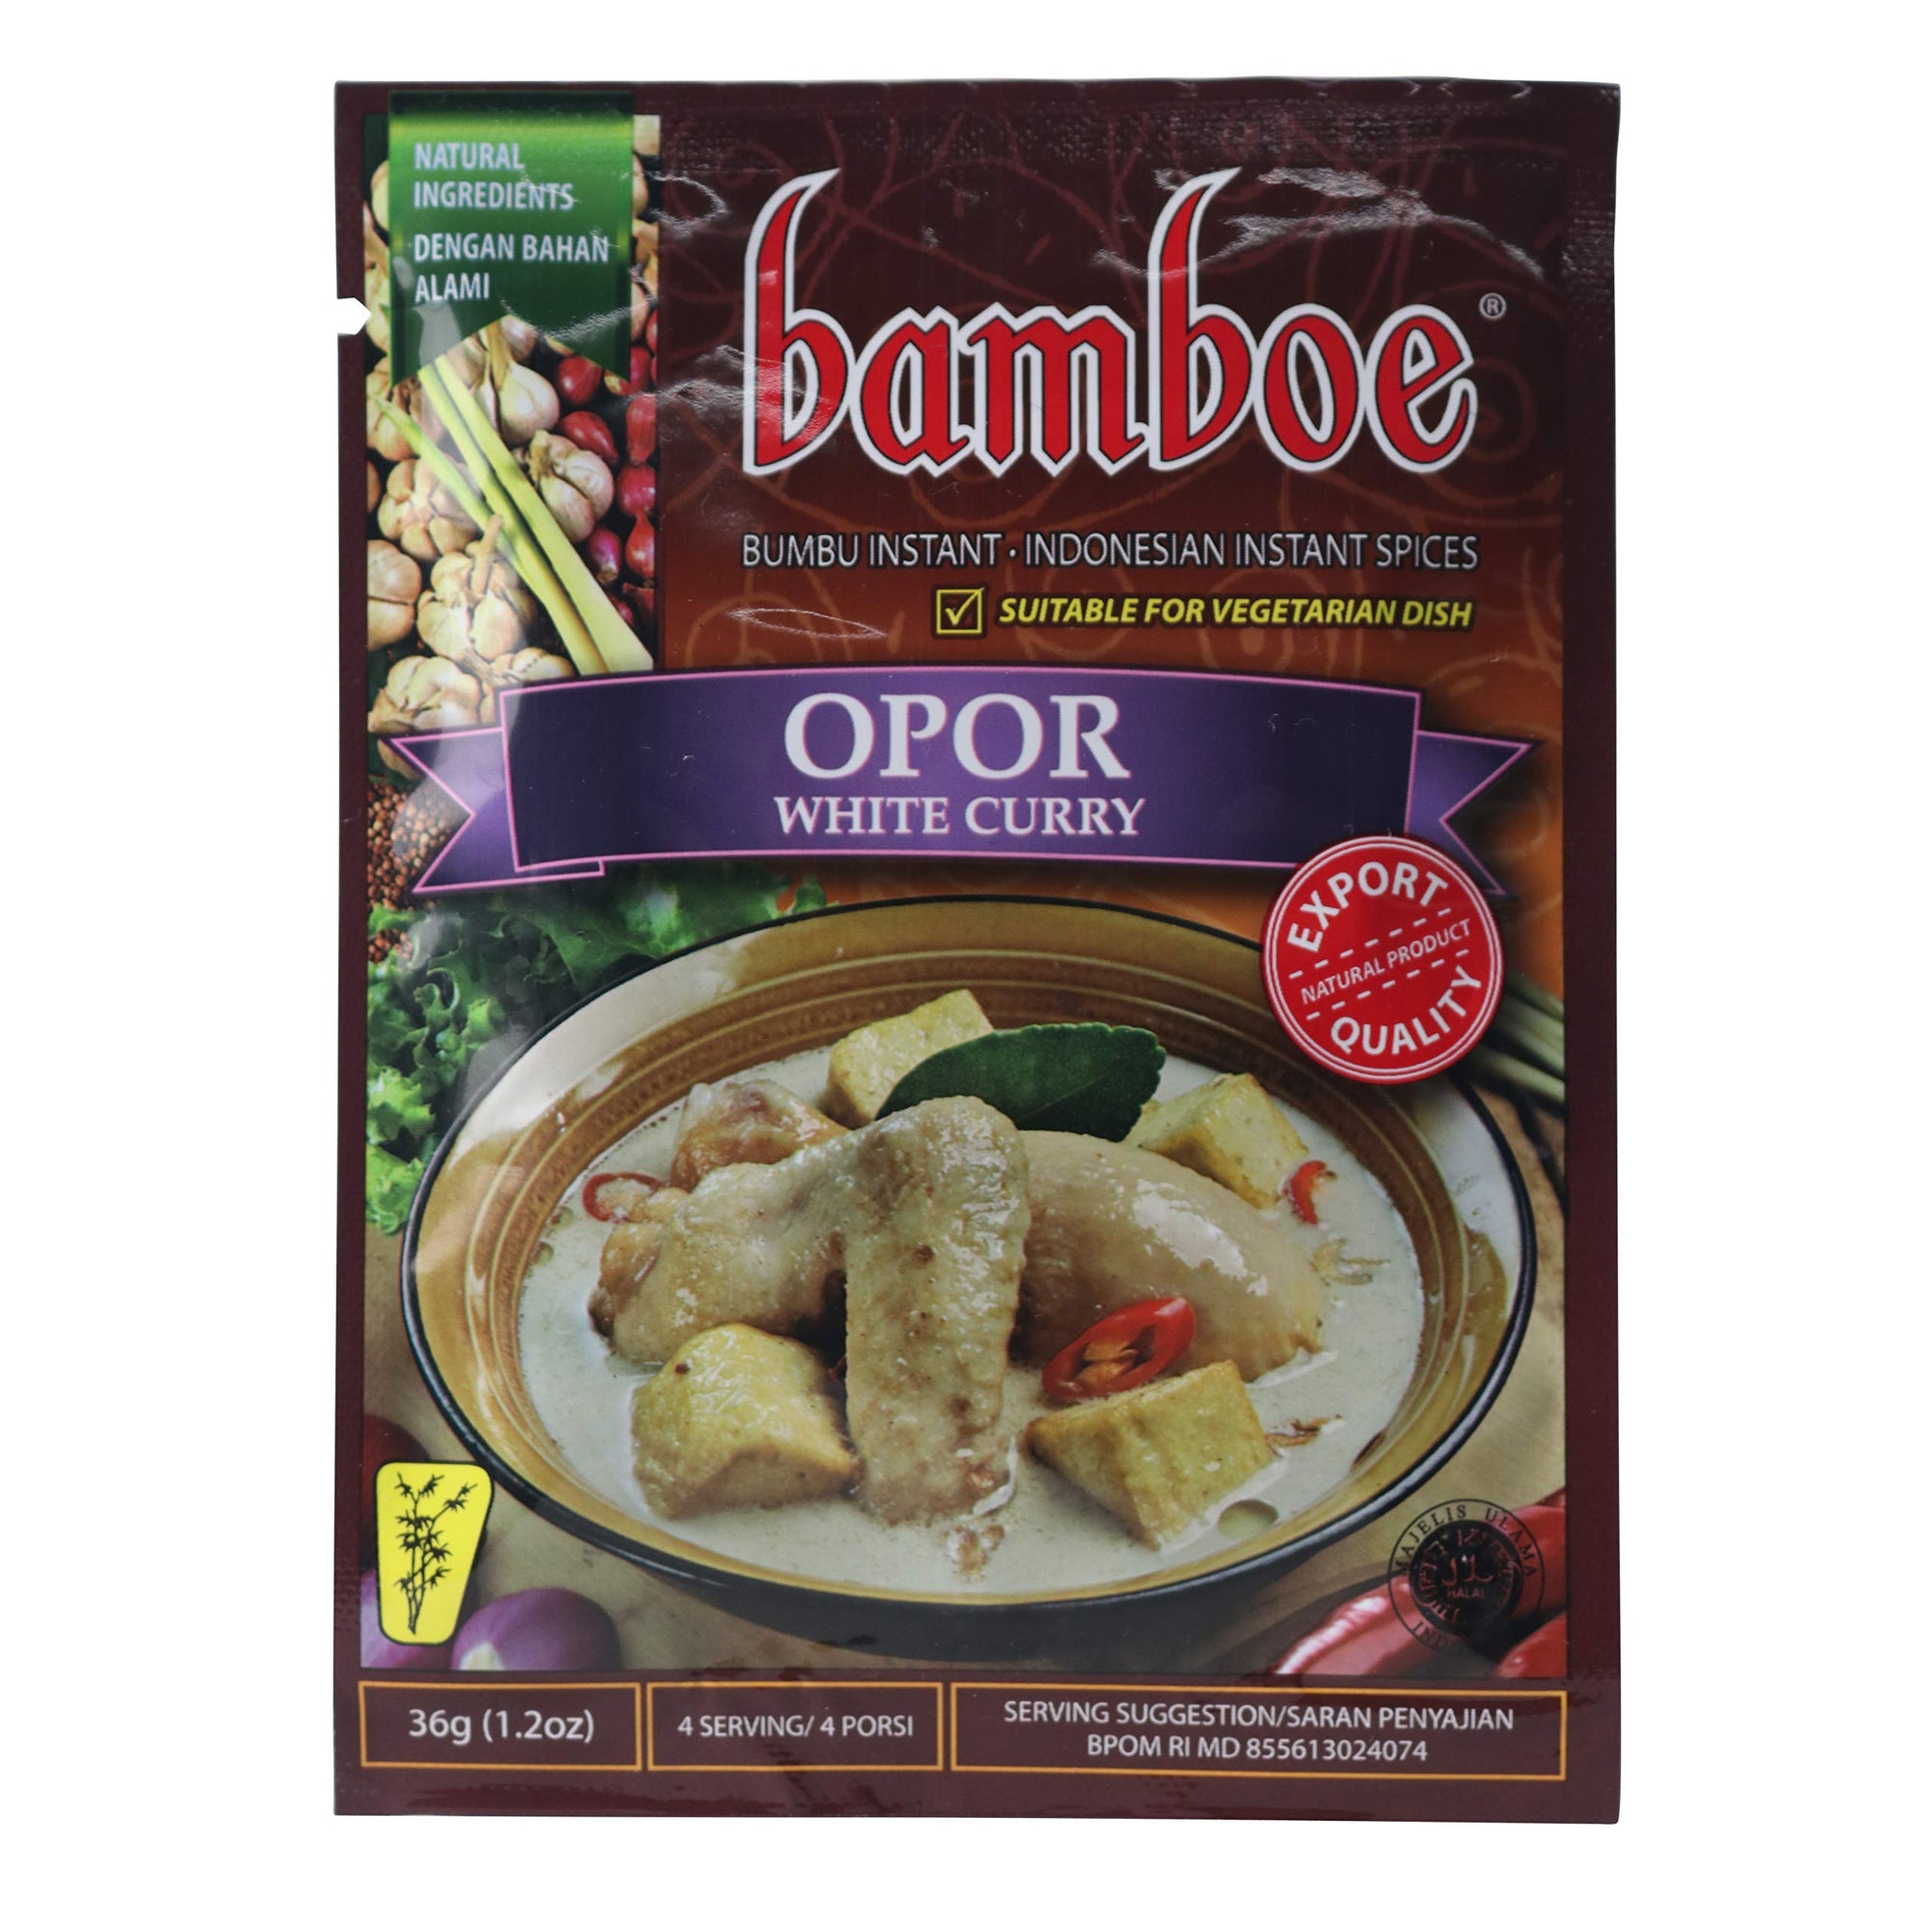 bamboe bumbu opor (indonesian white curry) - 1.2oz